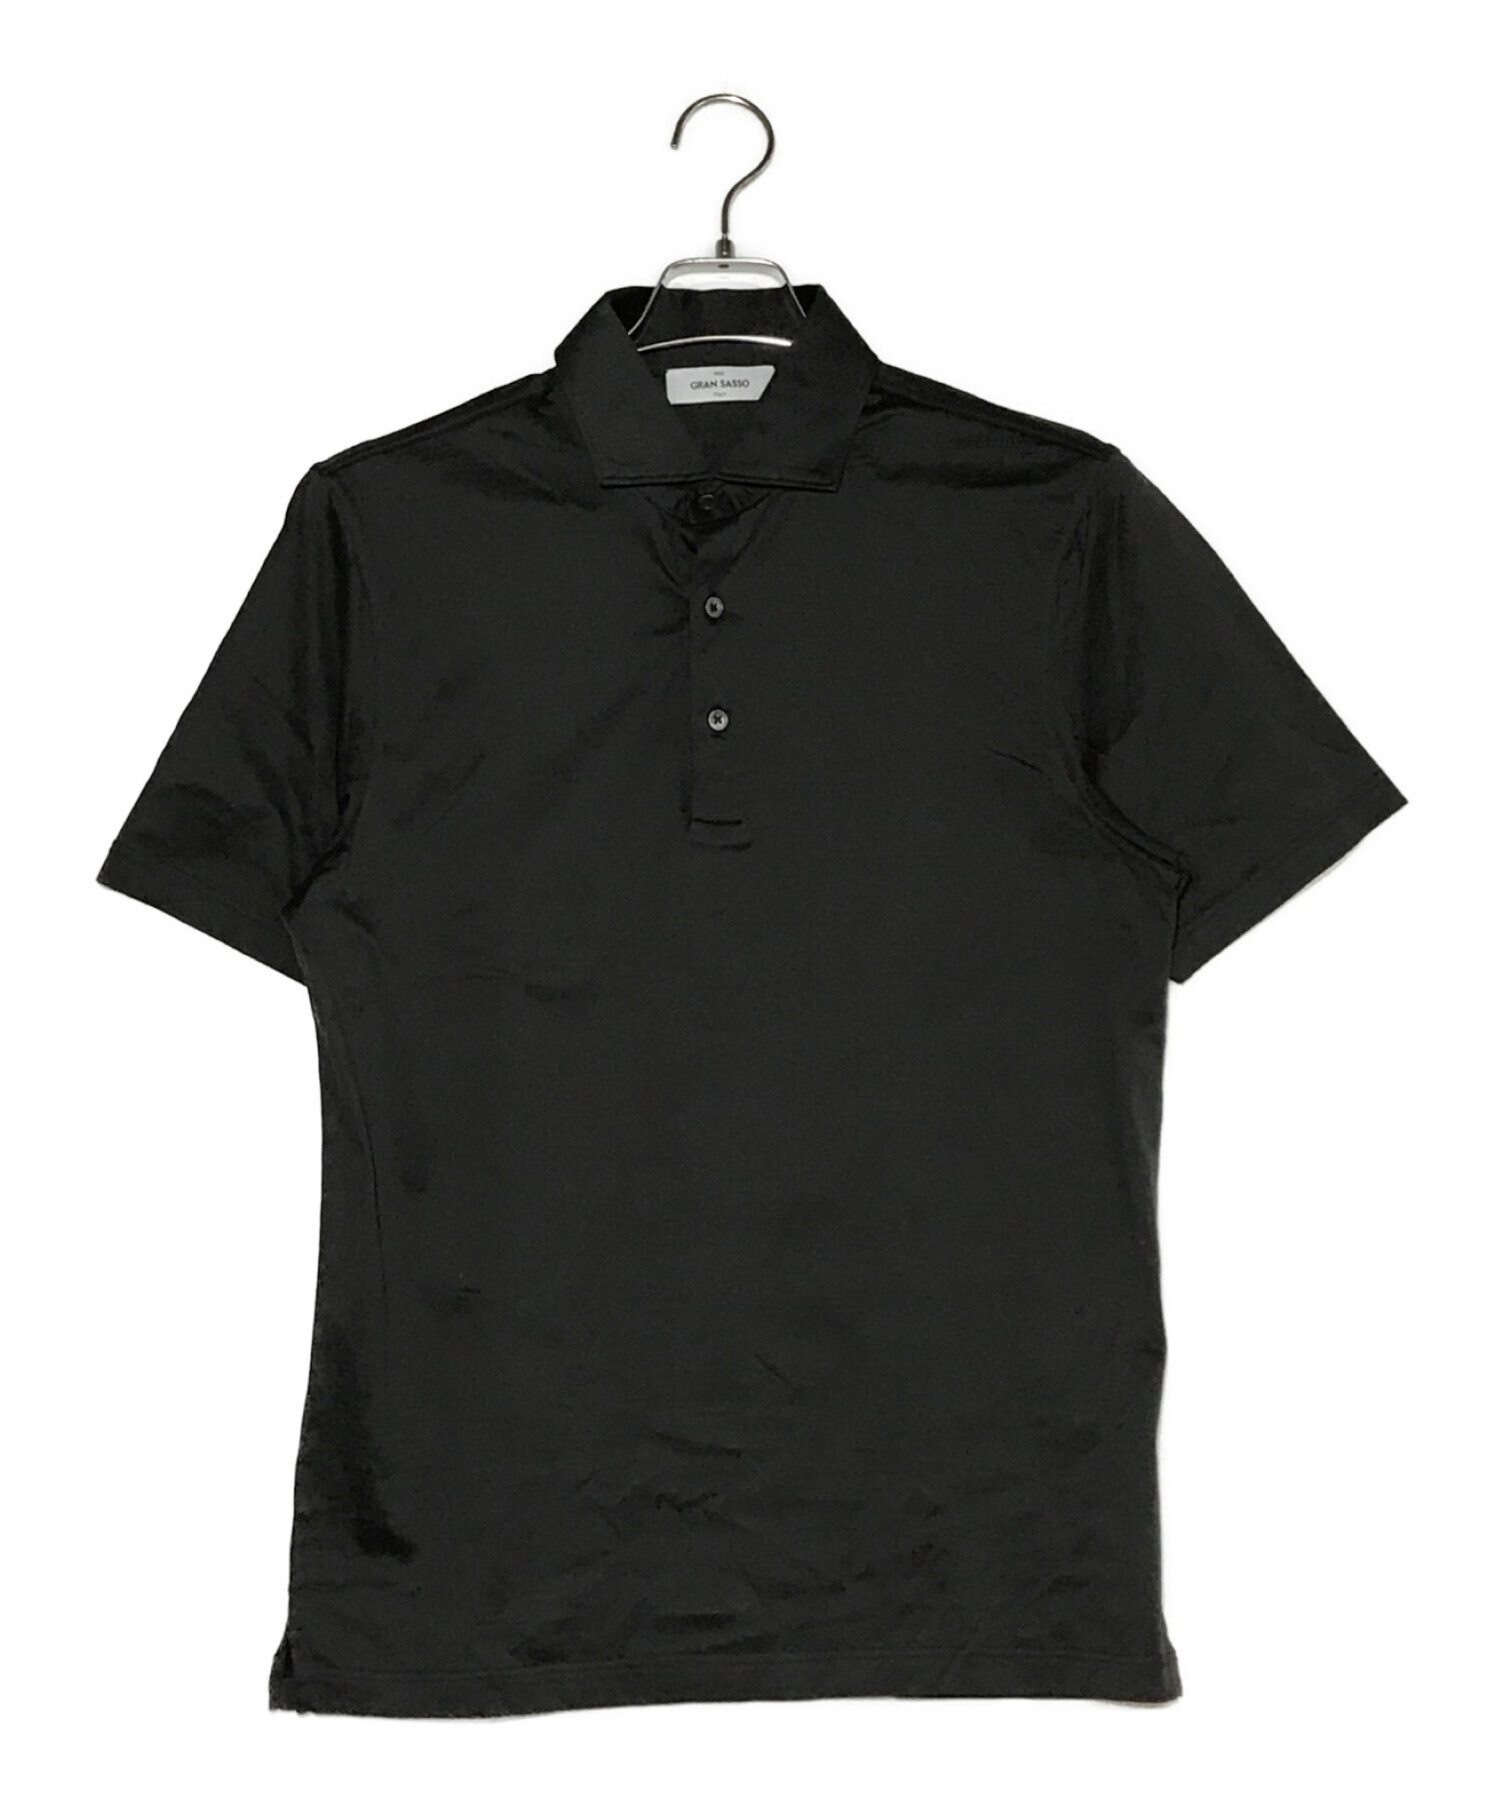 GRAN SASSO グランサッソ ポロシャツ トップス メンズ Polo shirts